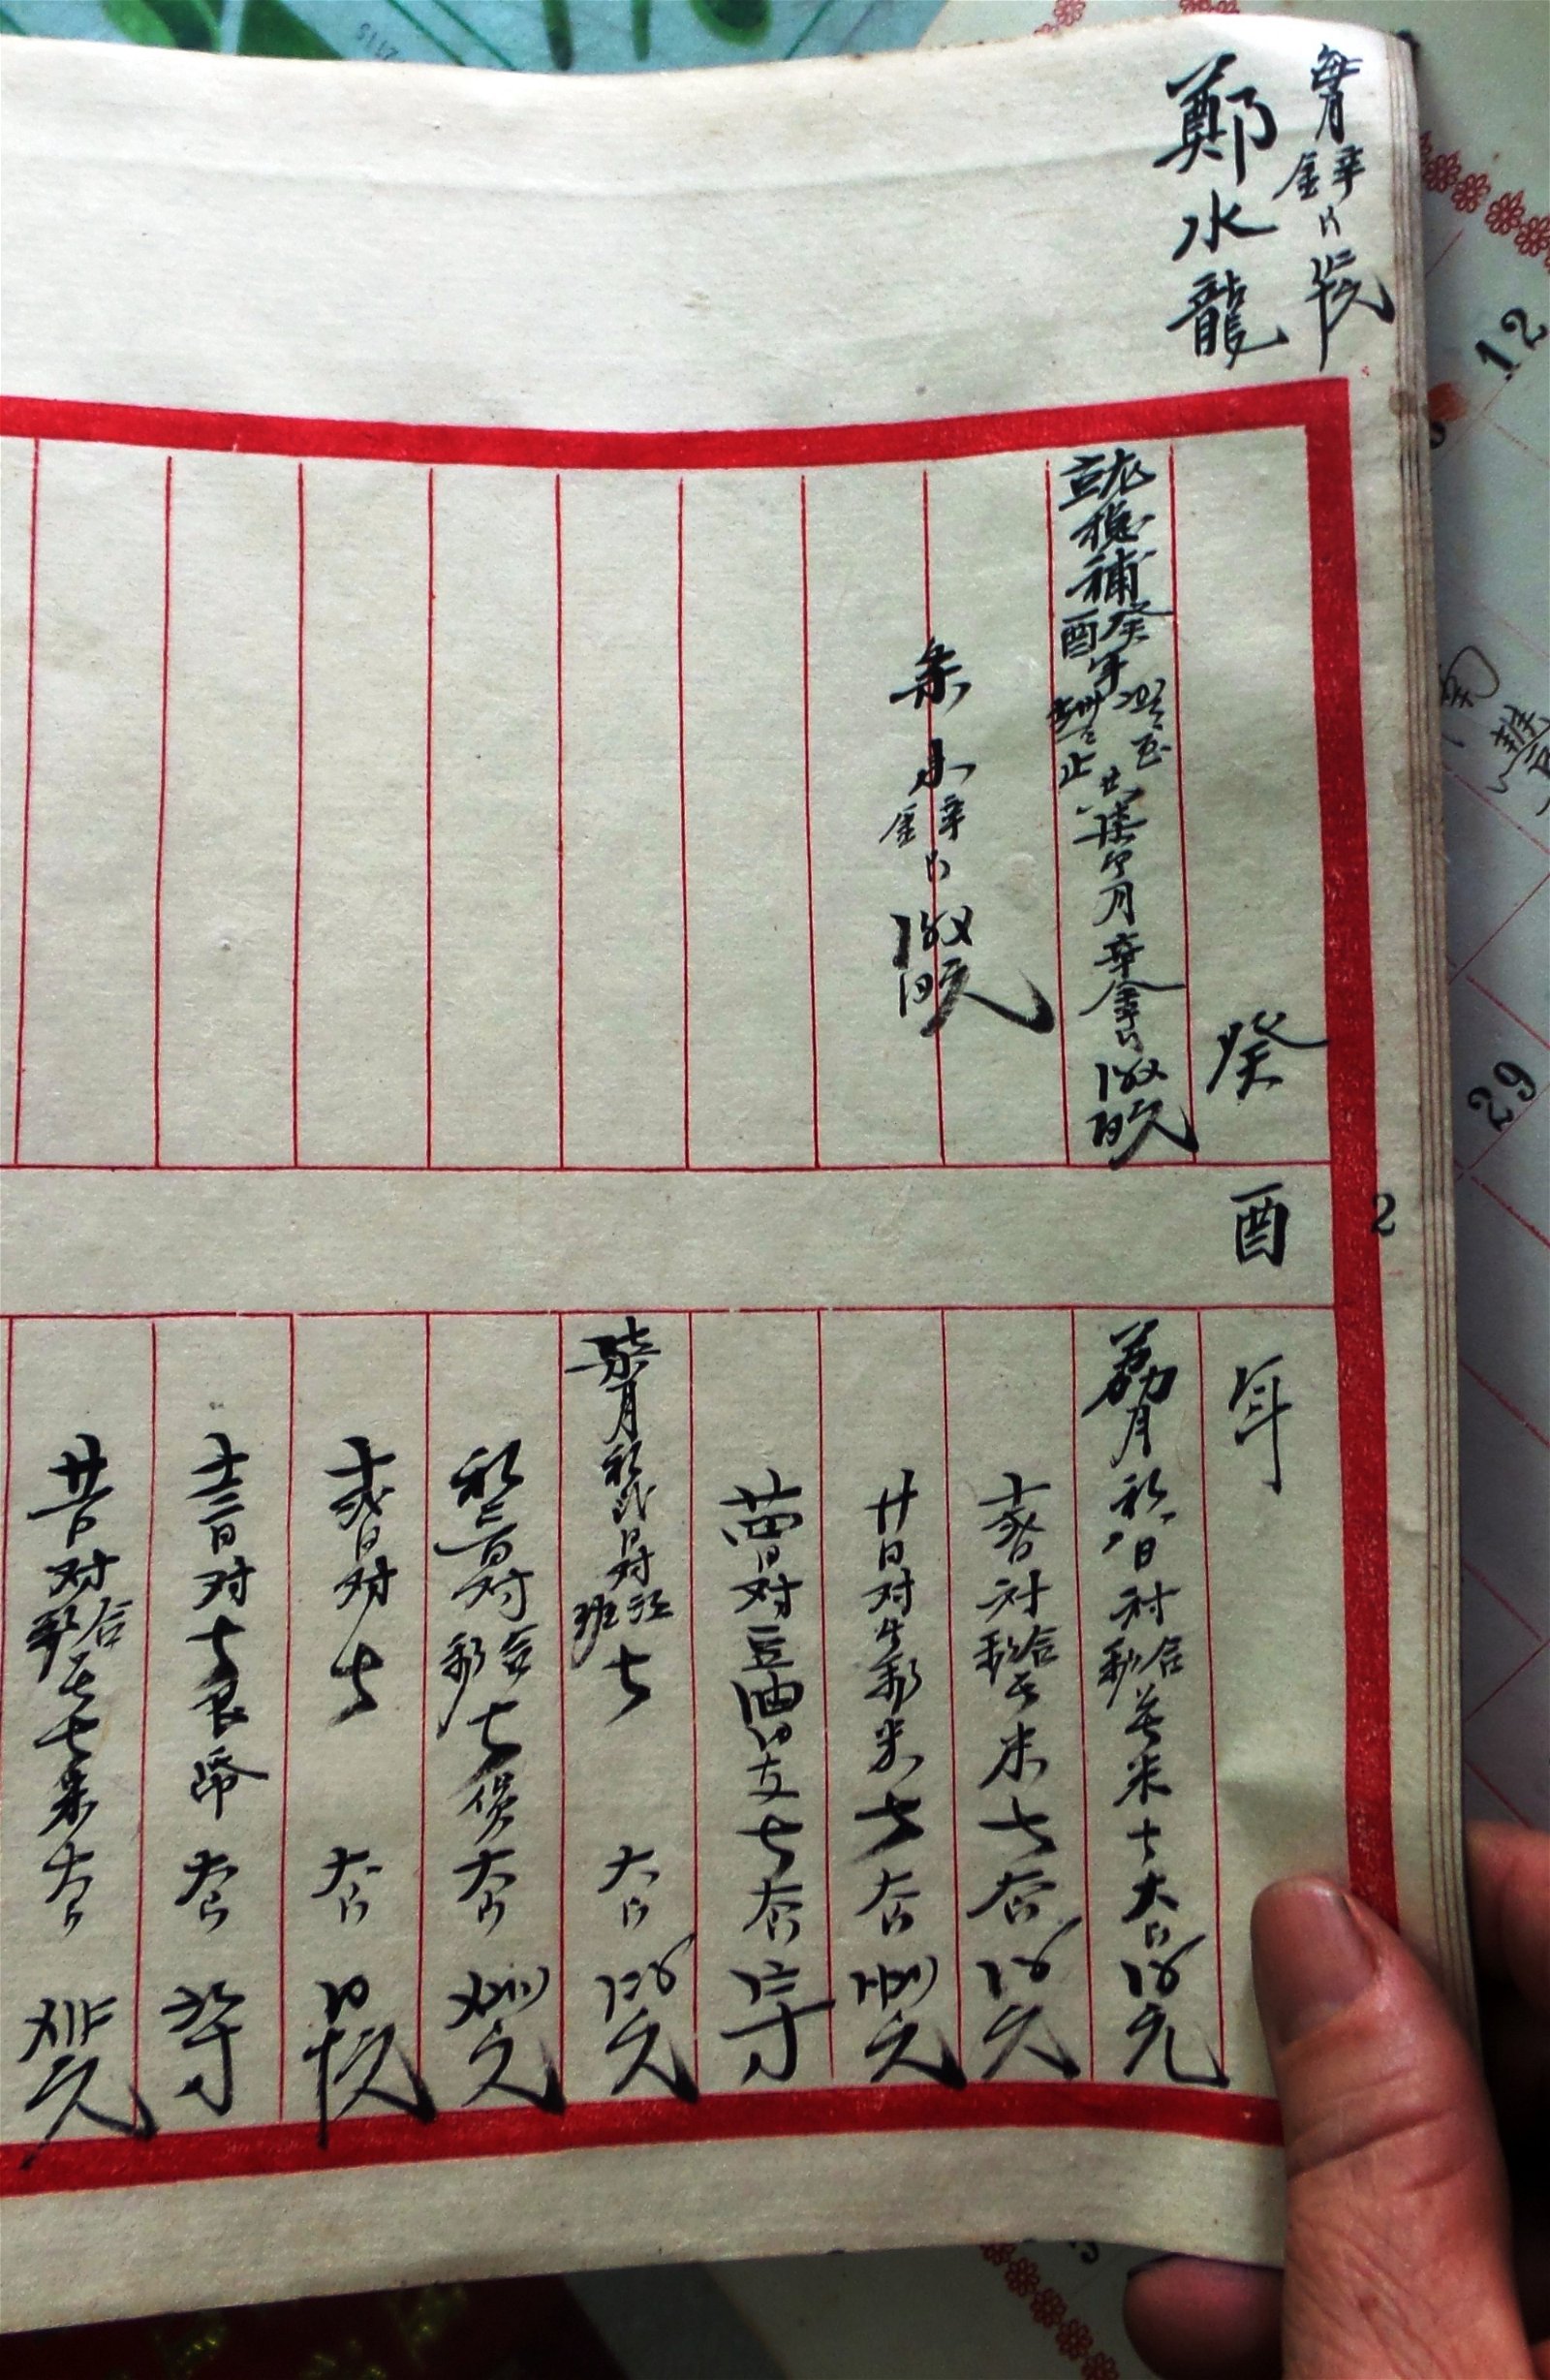 第2代接班人郑水龙的字迹仍清晰可见，成为第4代接班人珍藏品。